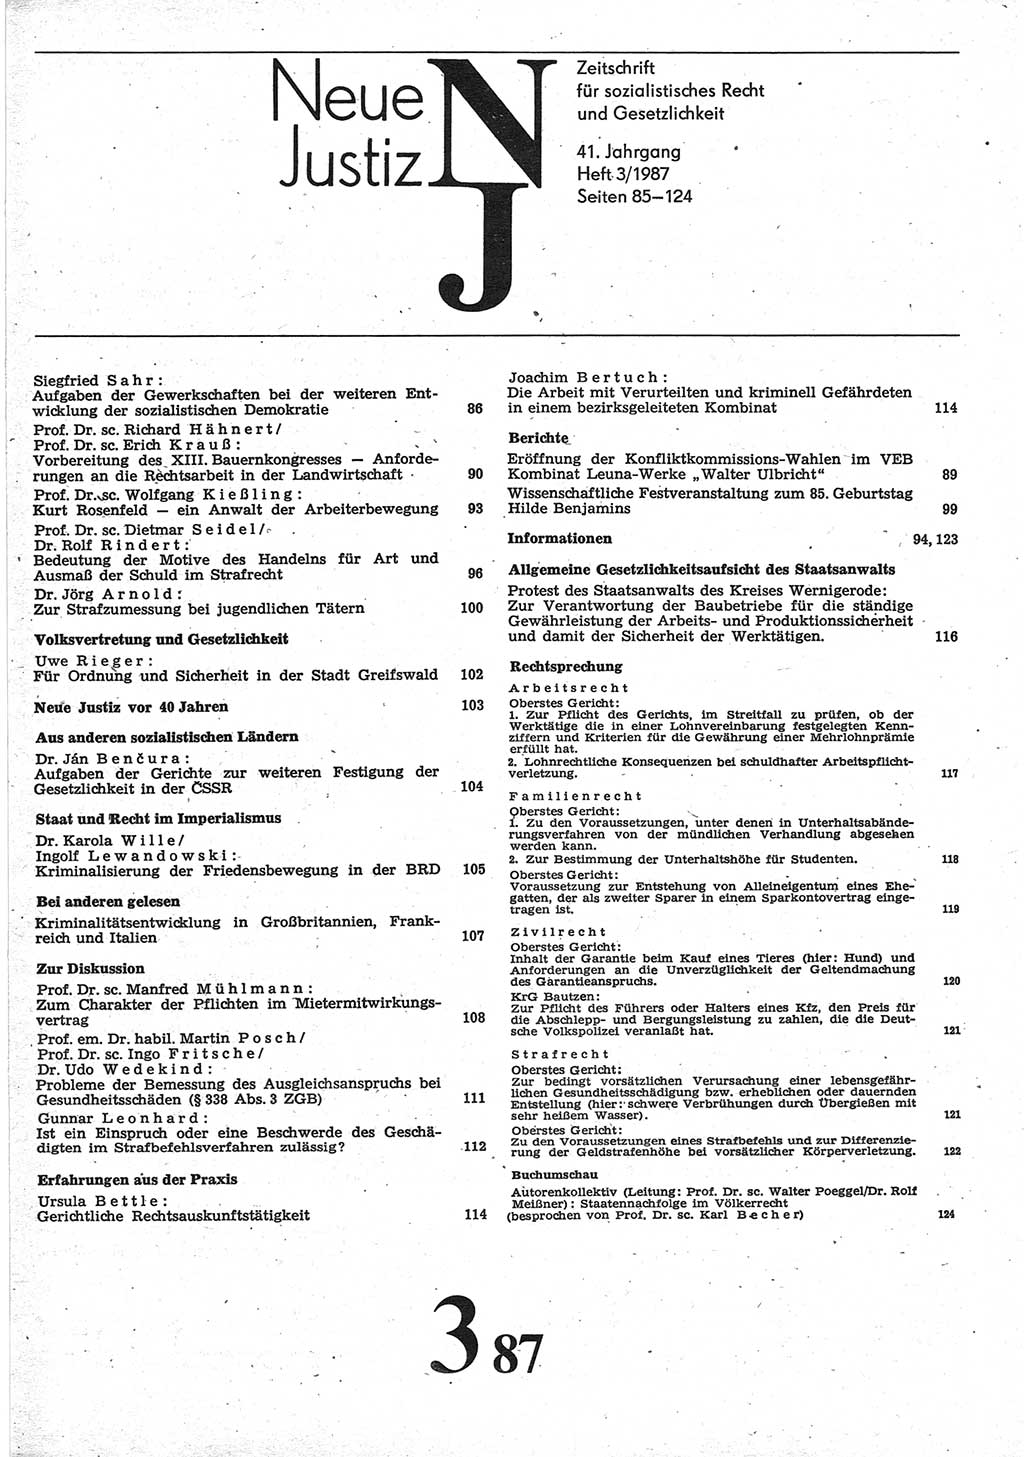 Neue Justiz (NJ), Zeitschrift für sozialistisches Recht und Gesetzlichkeit [Deutsche Demokratische Republik (DDR)], 41. Jahrgang 1987, Seite 85 (NJ DDR 1987, S. 85)